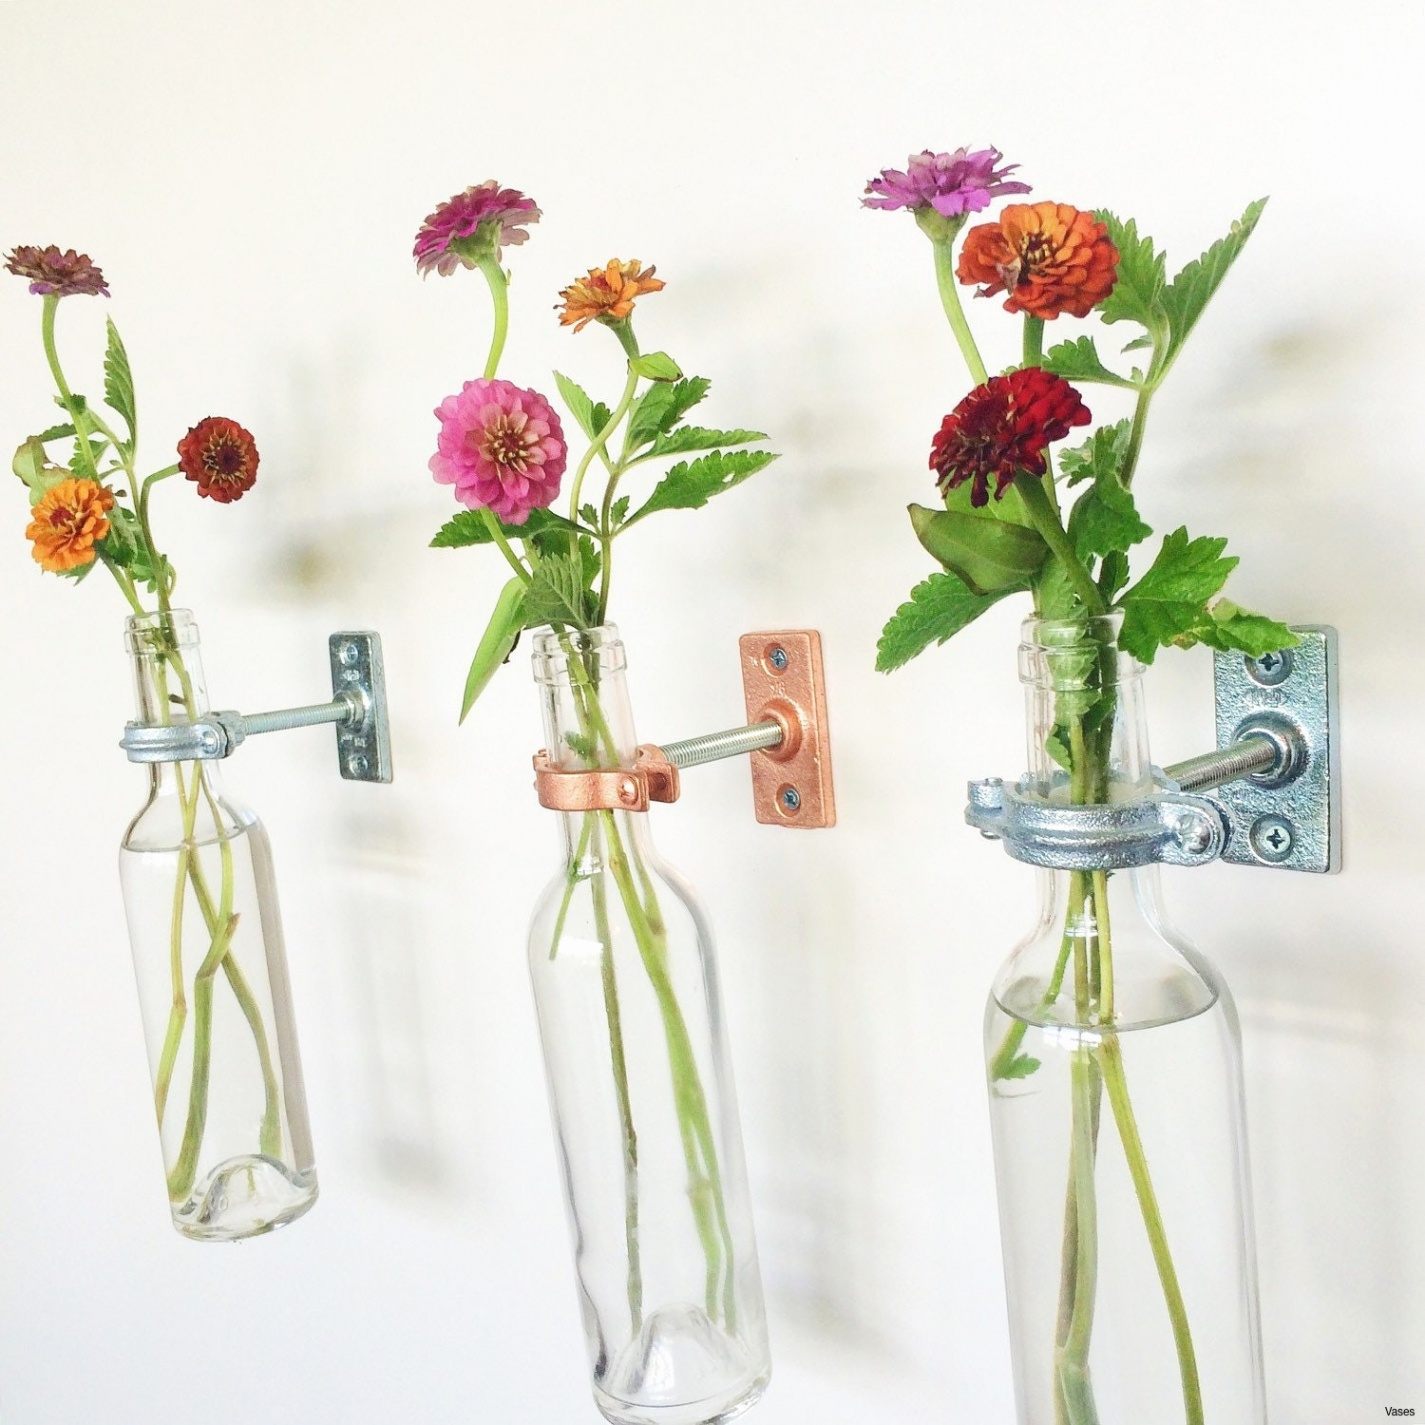 Lit 2 Metre Inspirant Vases Disposable Plastic Single Cheap Flower Rose Vasei 0d Design